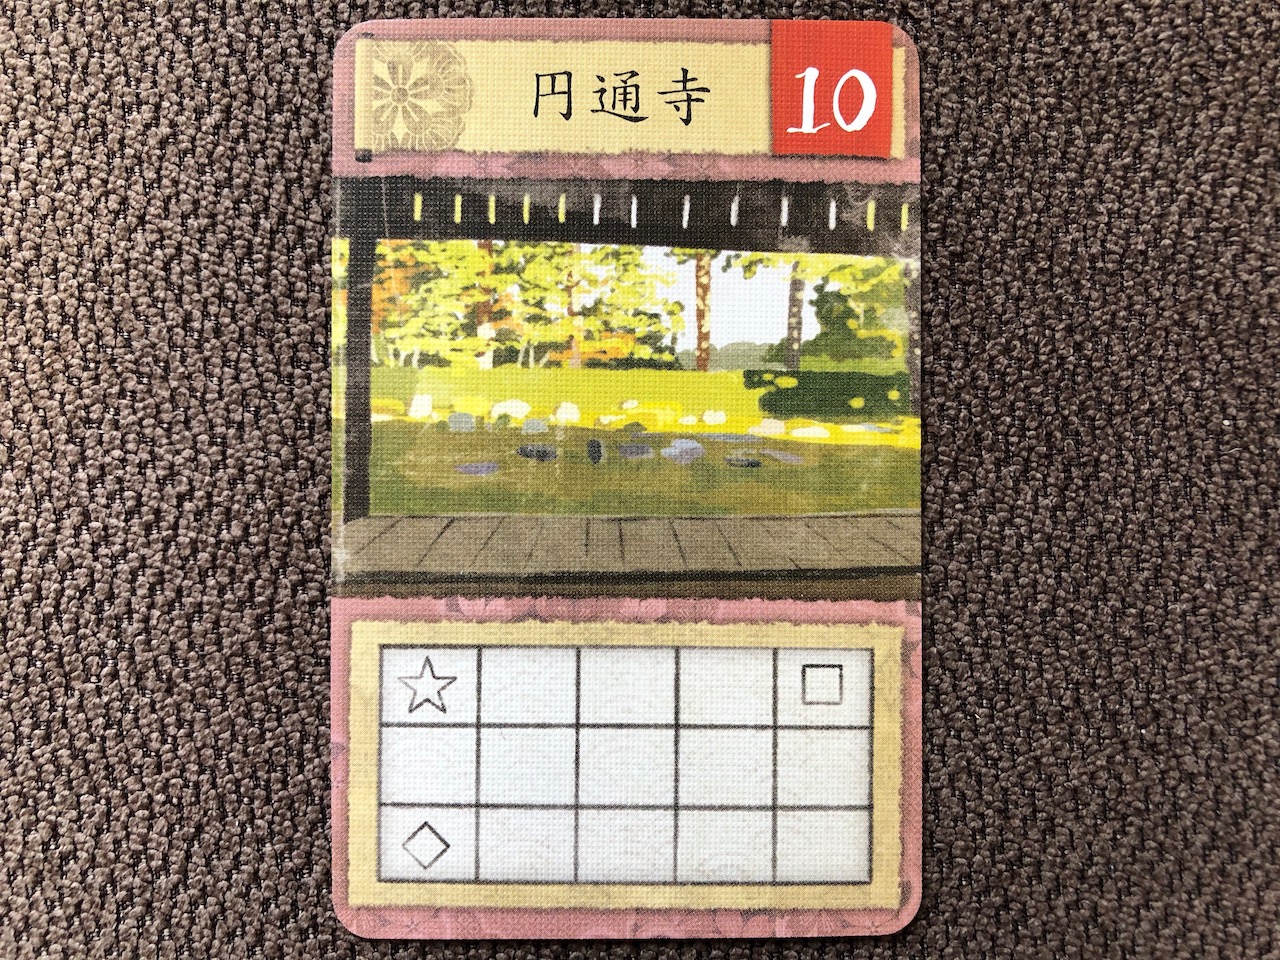 「円通寺」の名庭園カード（10点）